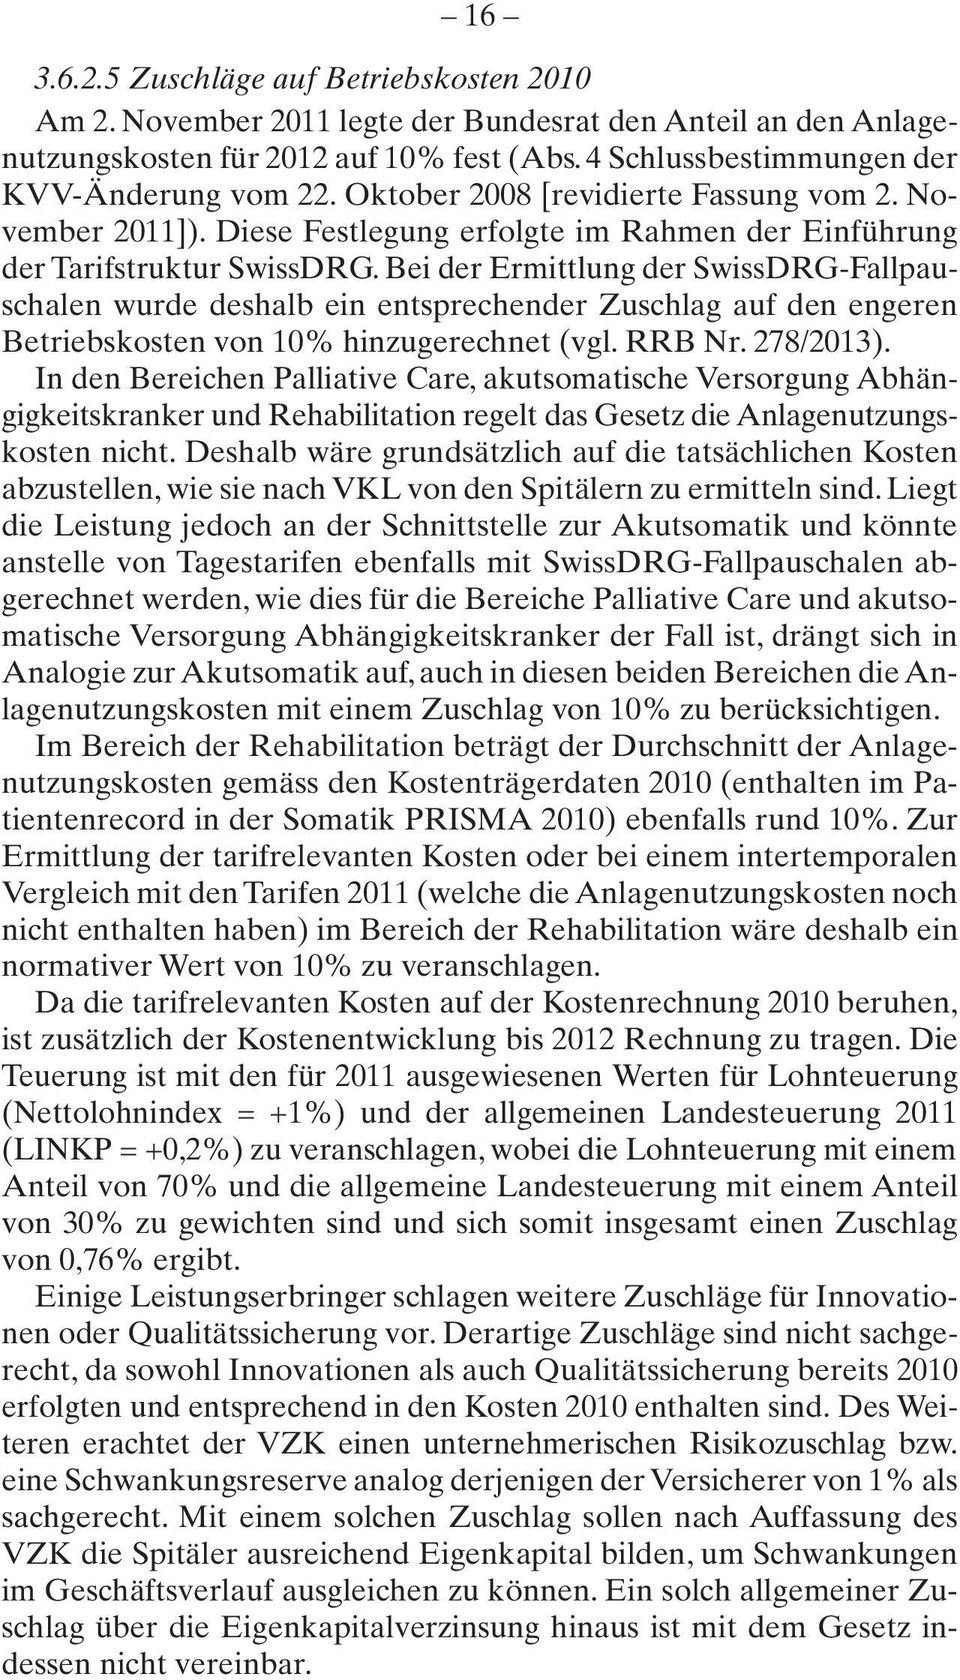 Bei der Ermittlung der SwissDRG-Fallpauschalen wurde deshalb ein entsprechender Zuschlag auf den engeren Betriebskosten von 10% hinzugerechnet (vgl. RRB Nr. 278/2013).